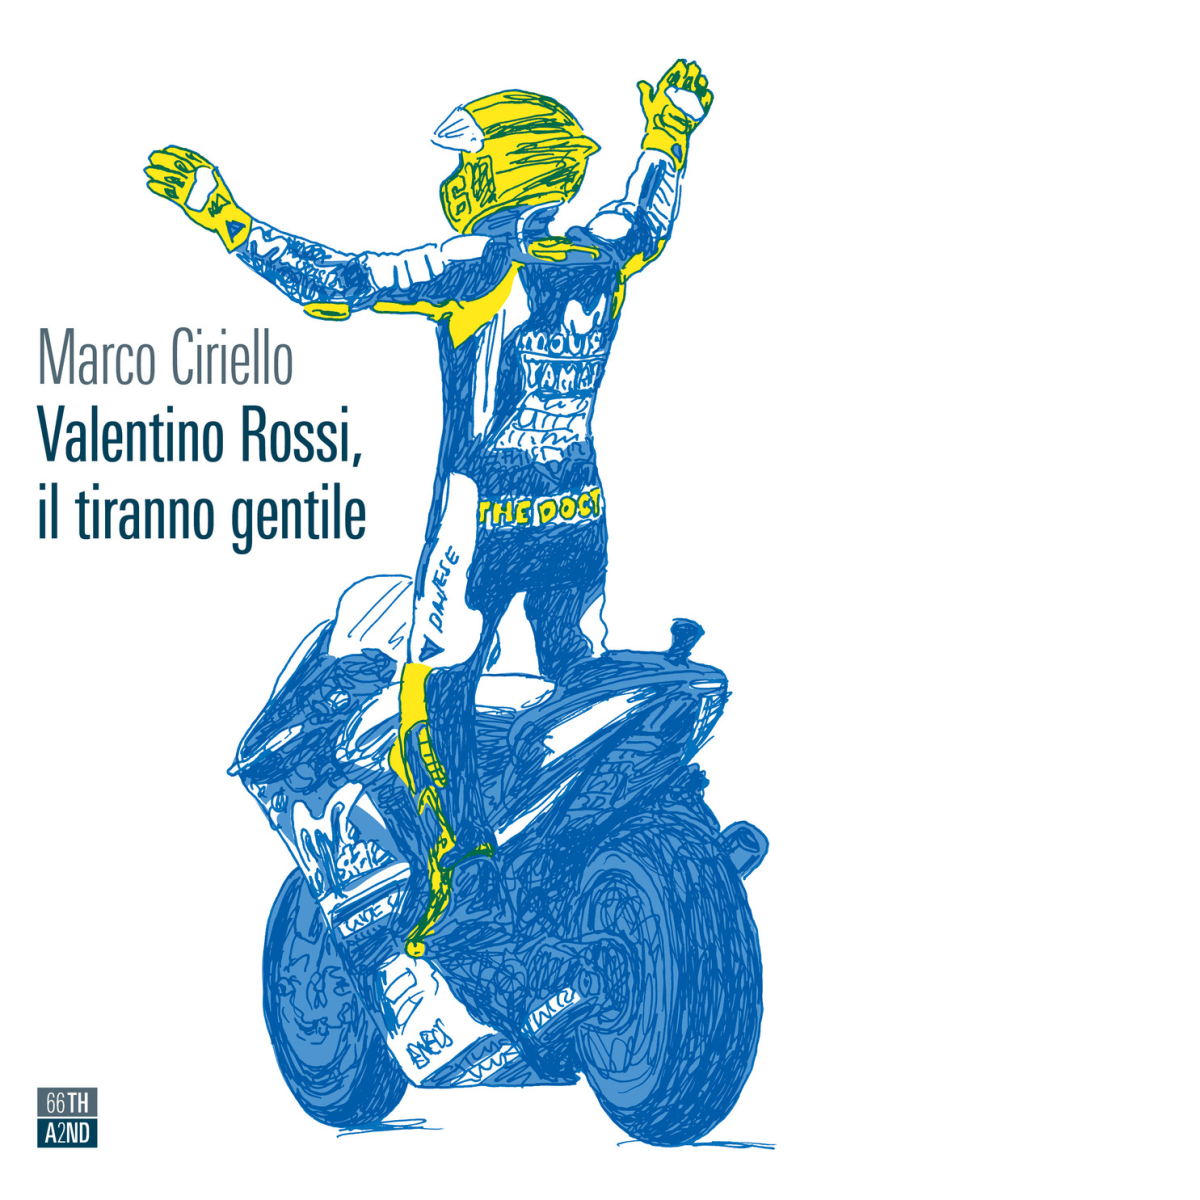 Valentino Rossi, il tiranno gentile di Marco Ciriello,  2021,  66th And 2nd libro usato